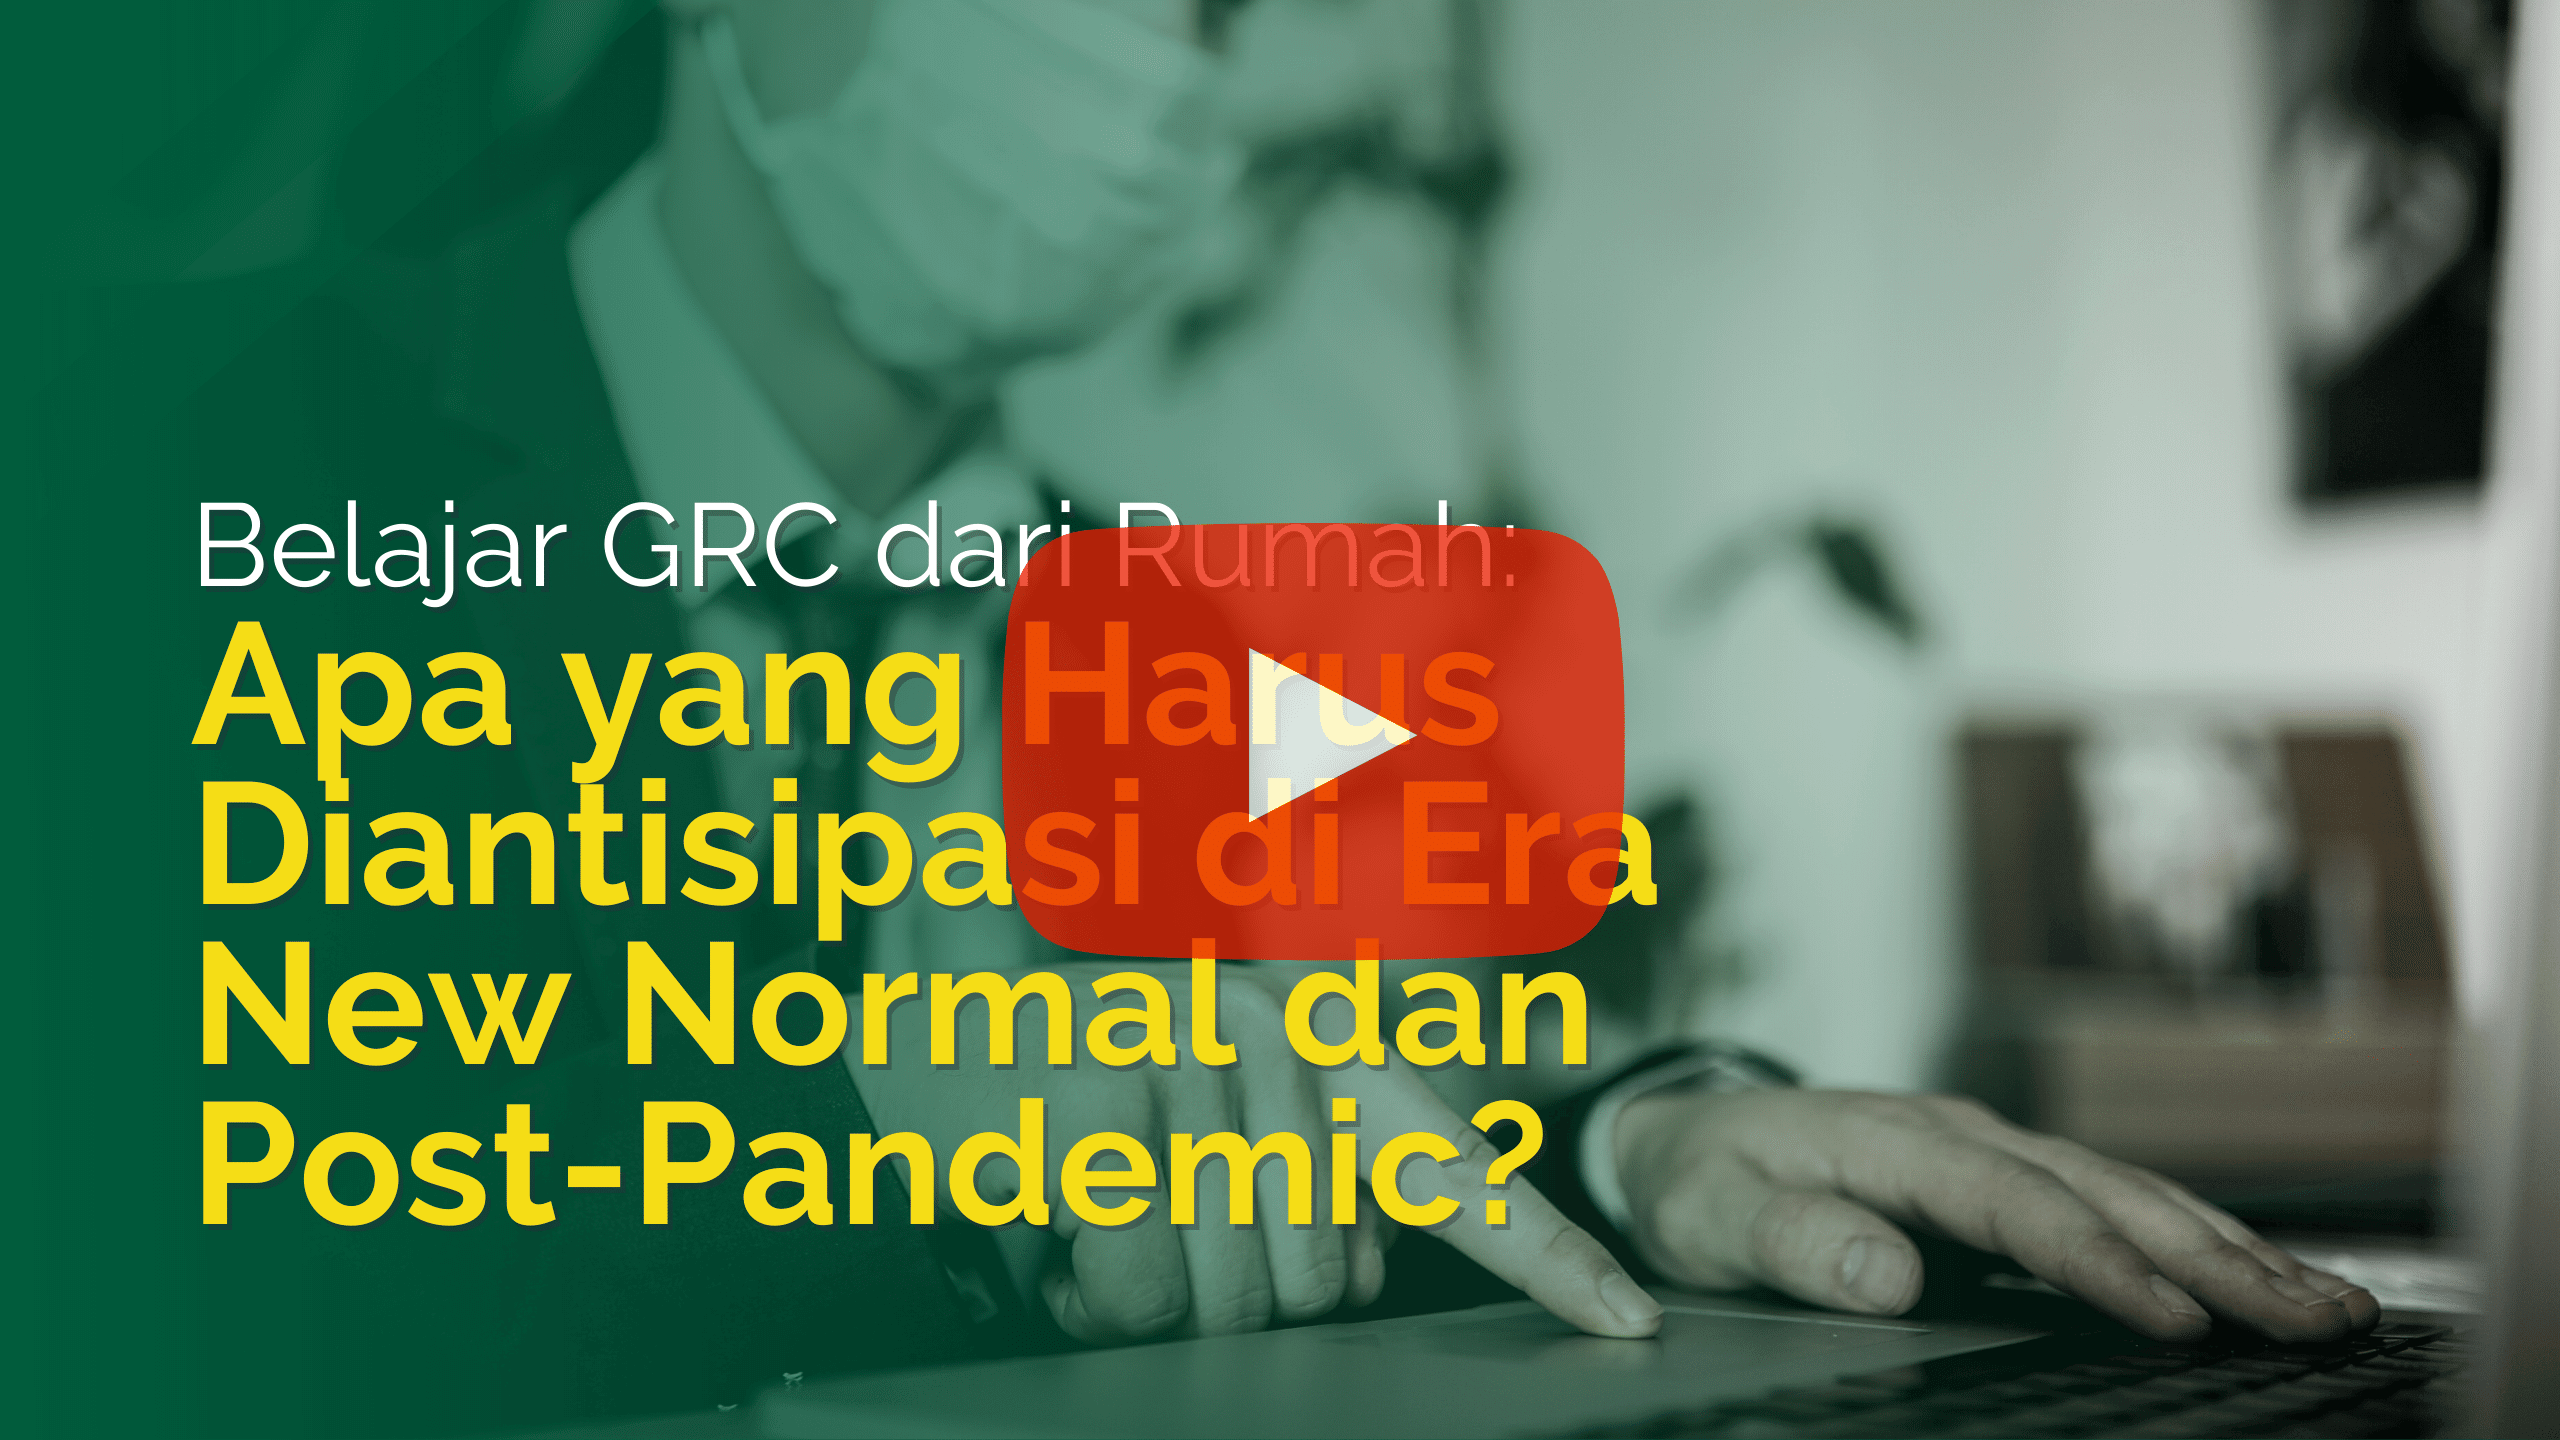 Apa yang Harus Diantisipasi di Era New Normal dan Post-Pandemic?